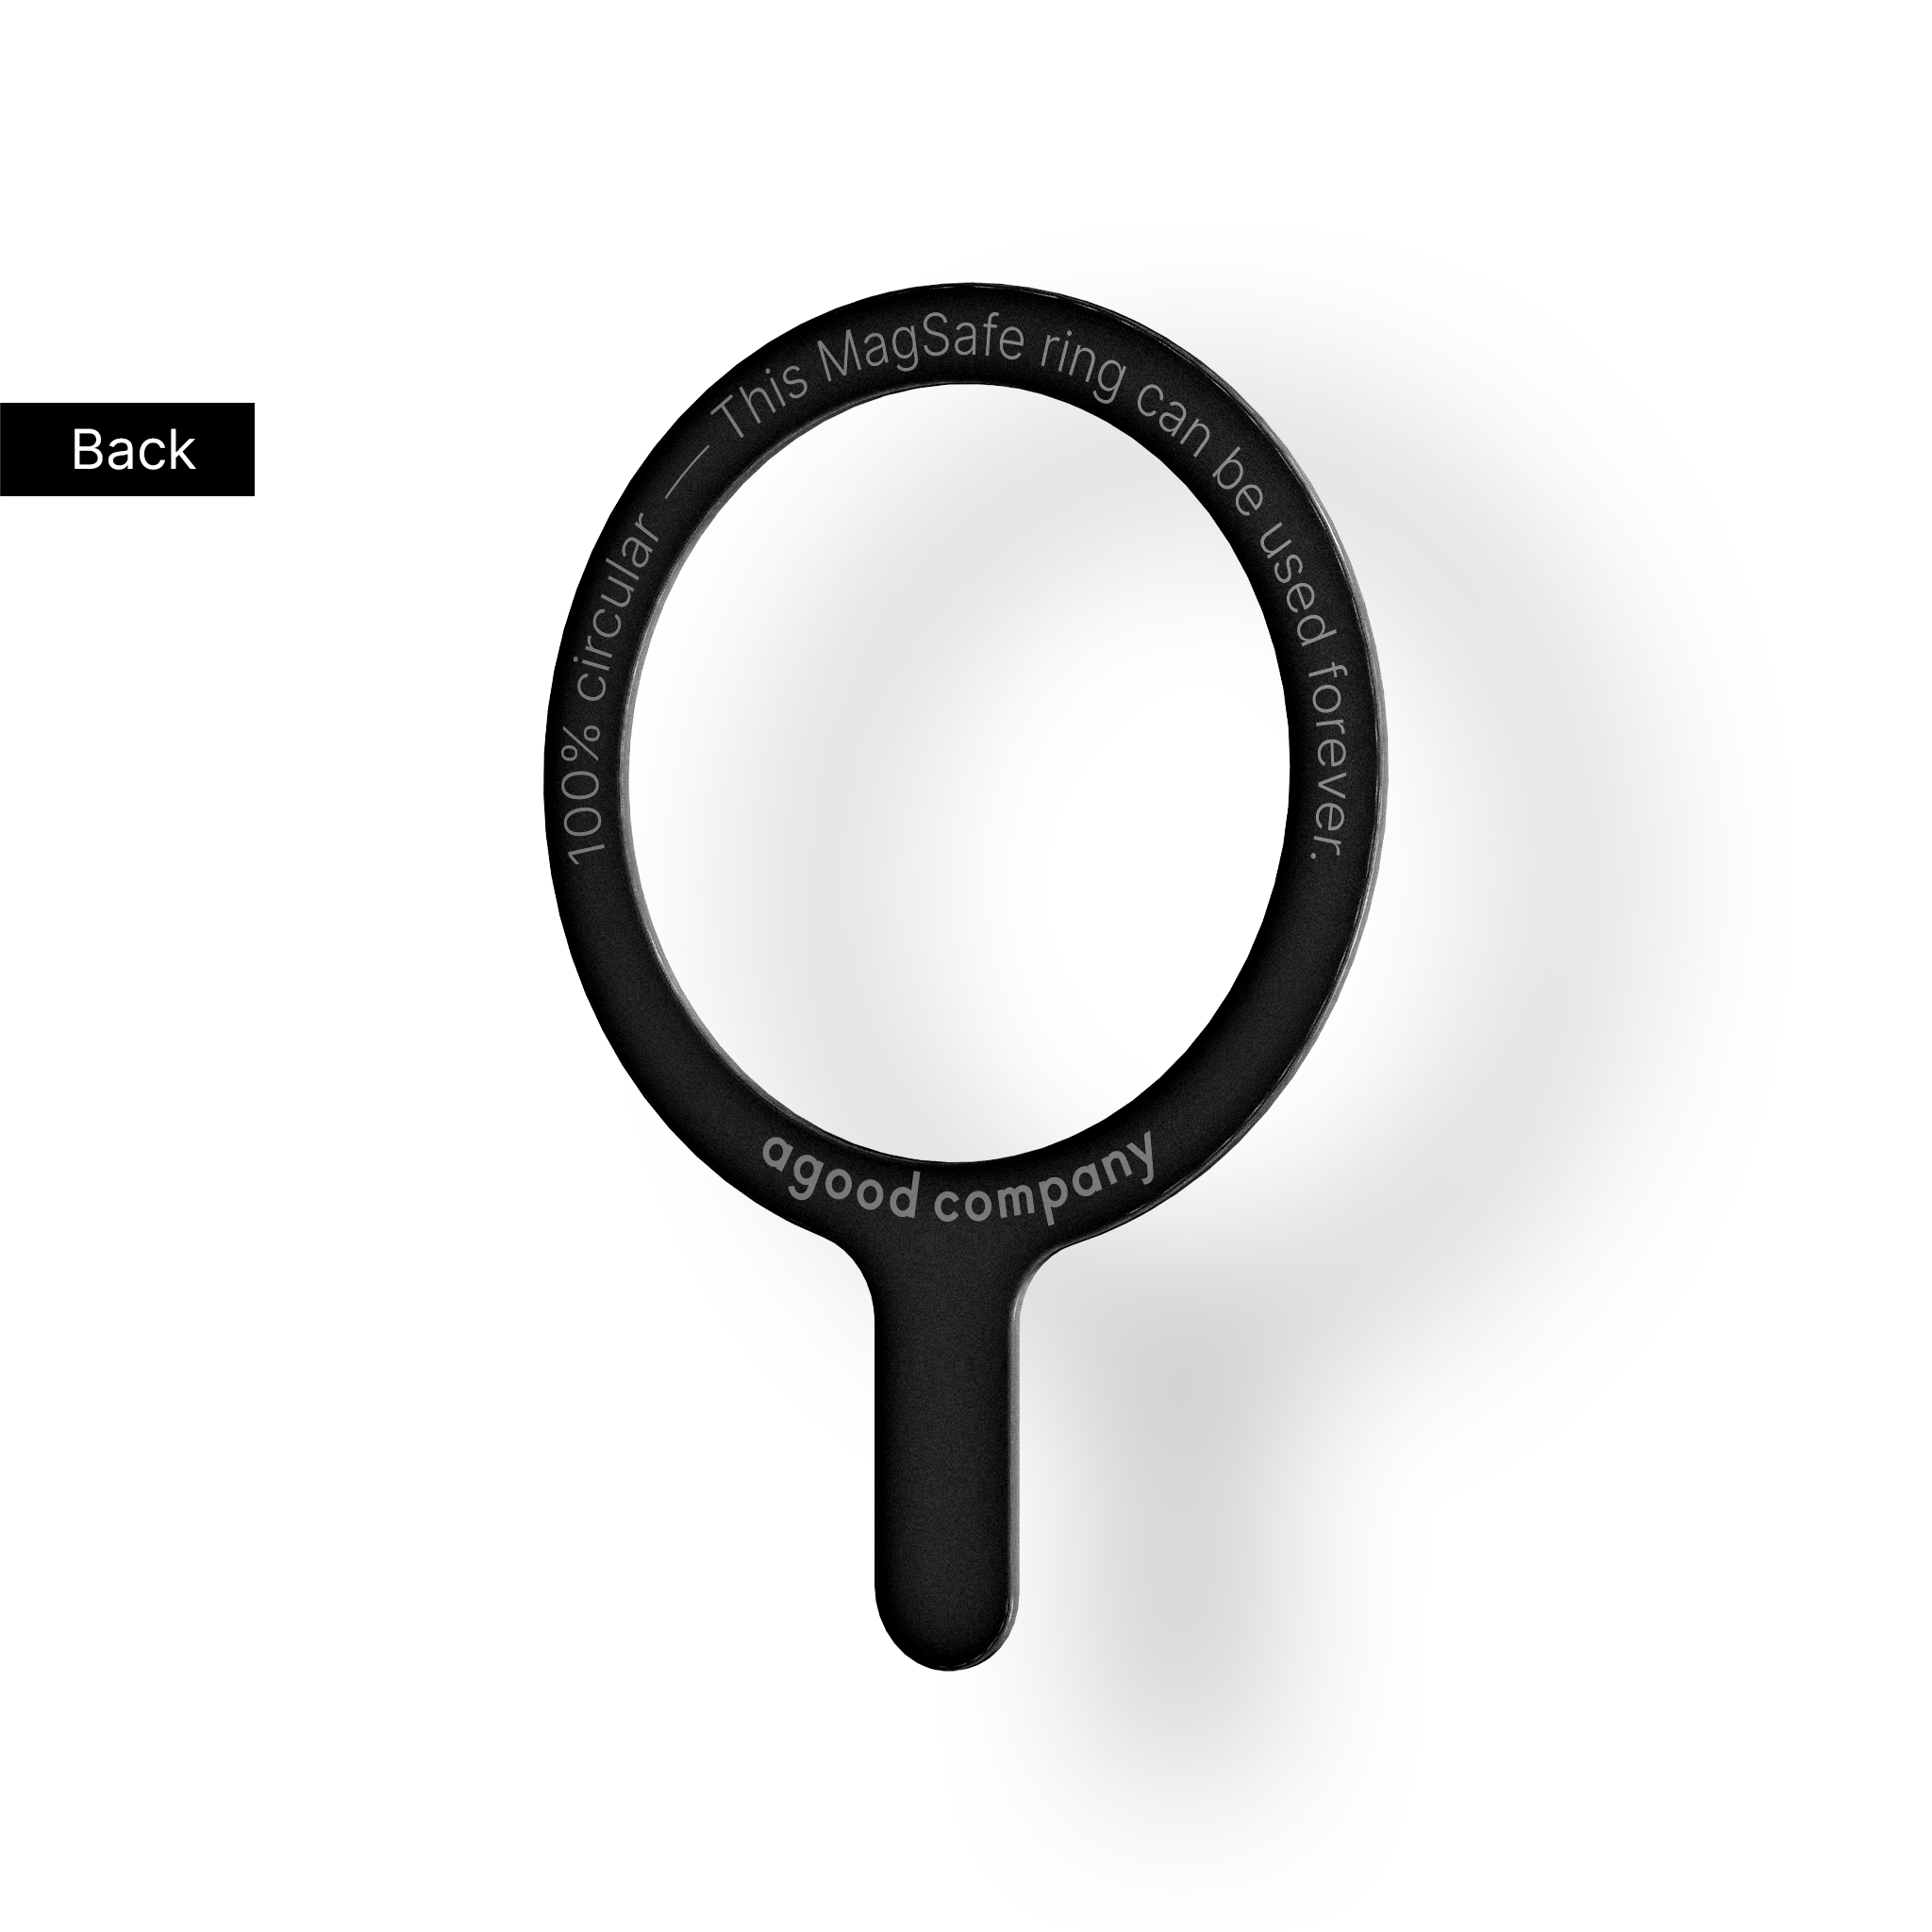 Verwijderbare MagSafe-ring, zwart